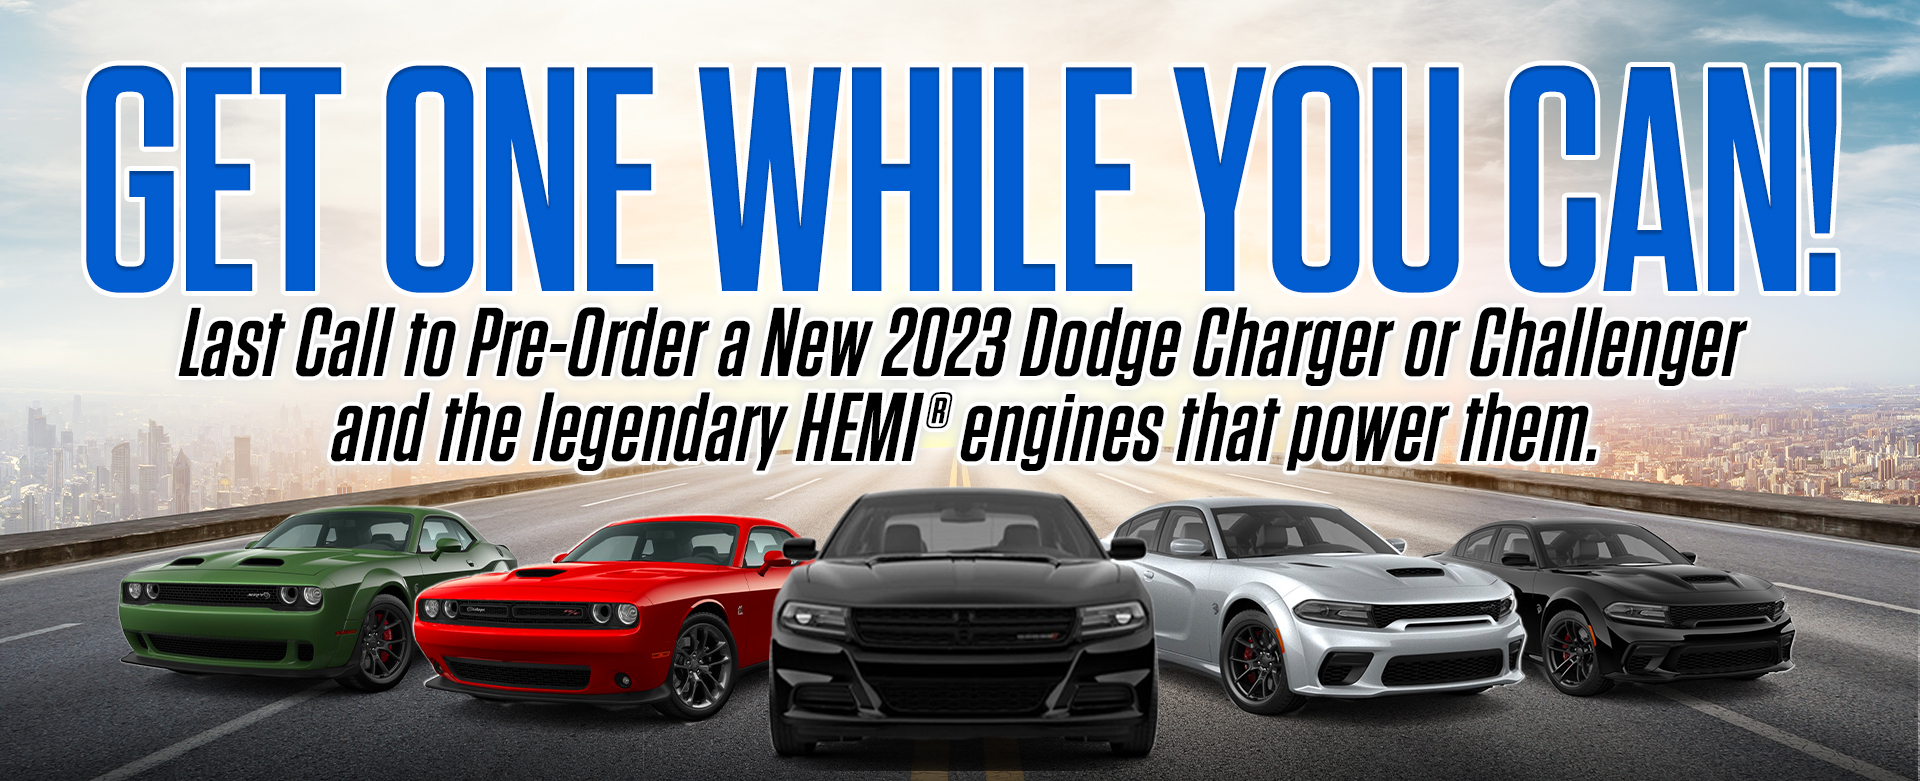 Dodge 2023 Order Concept